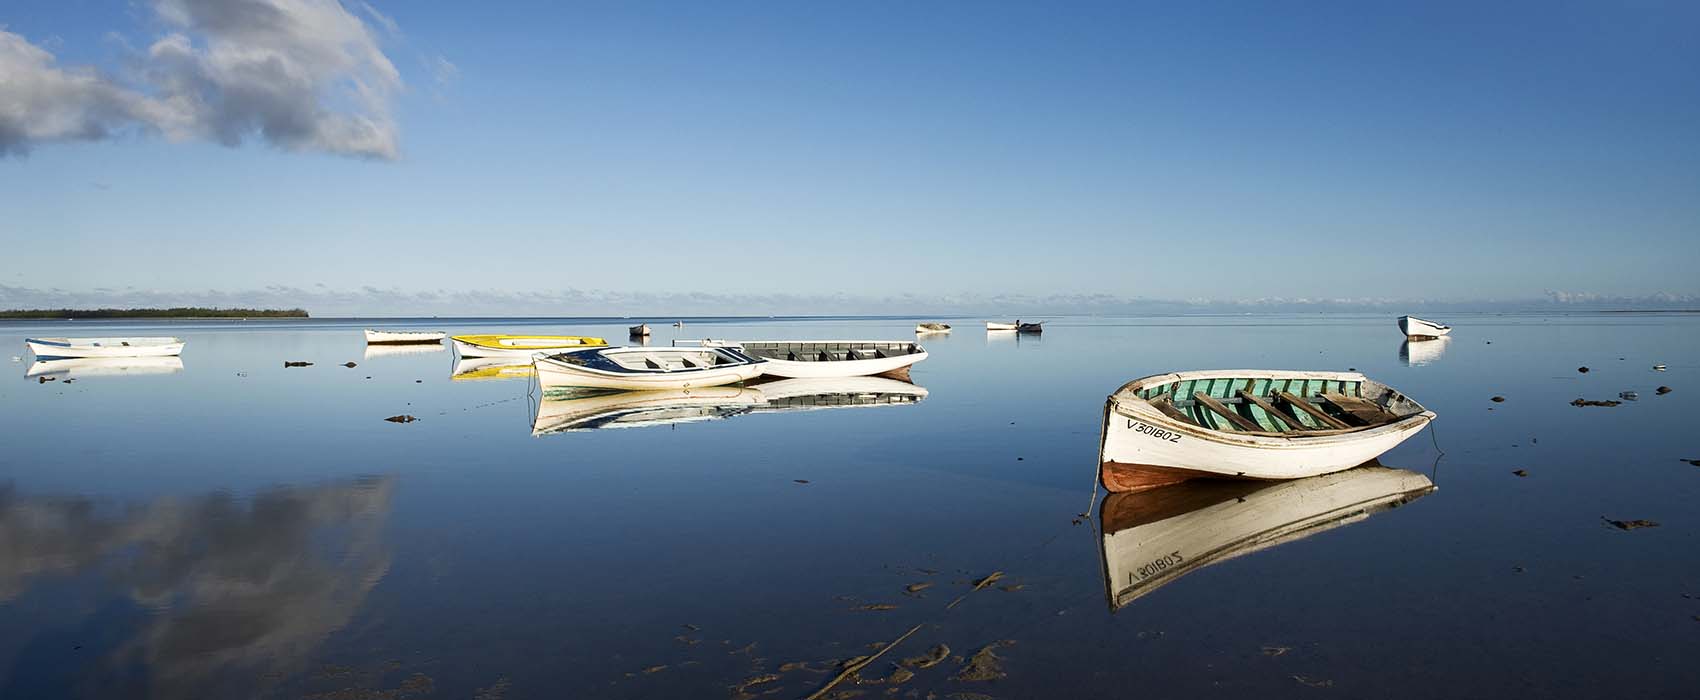 African Mauritius Safari boats